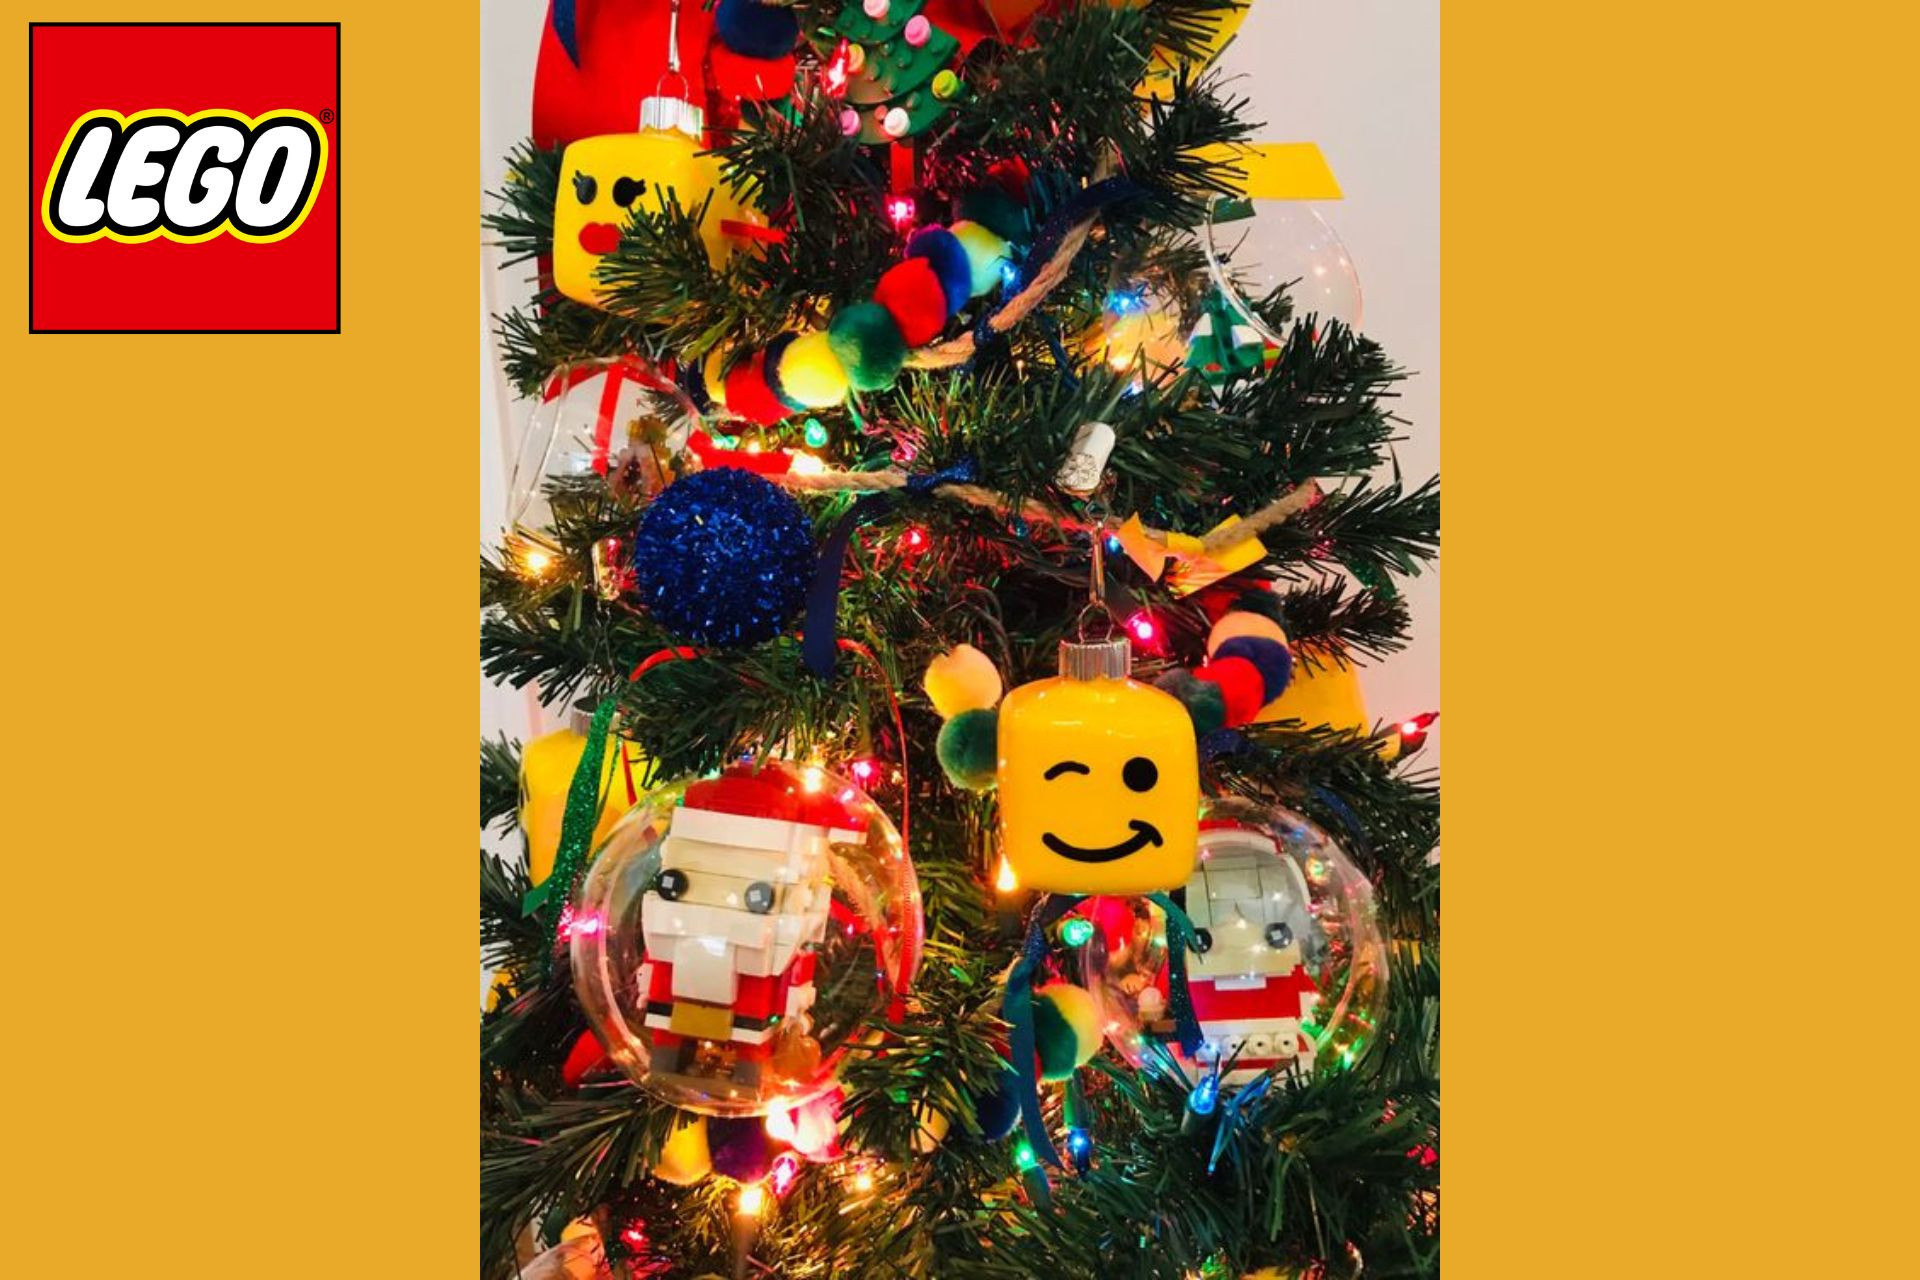 Décorez votre salon ou votre sapin avec cette collection Lego spécial Noël